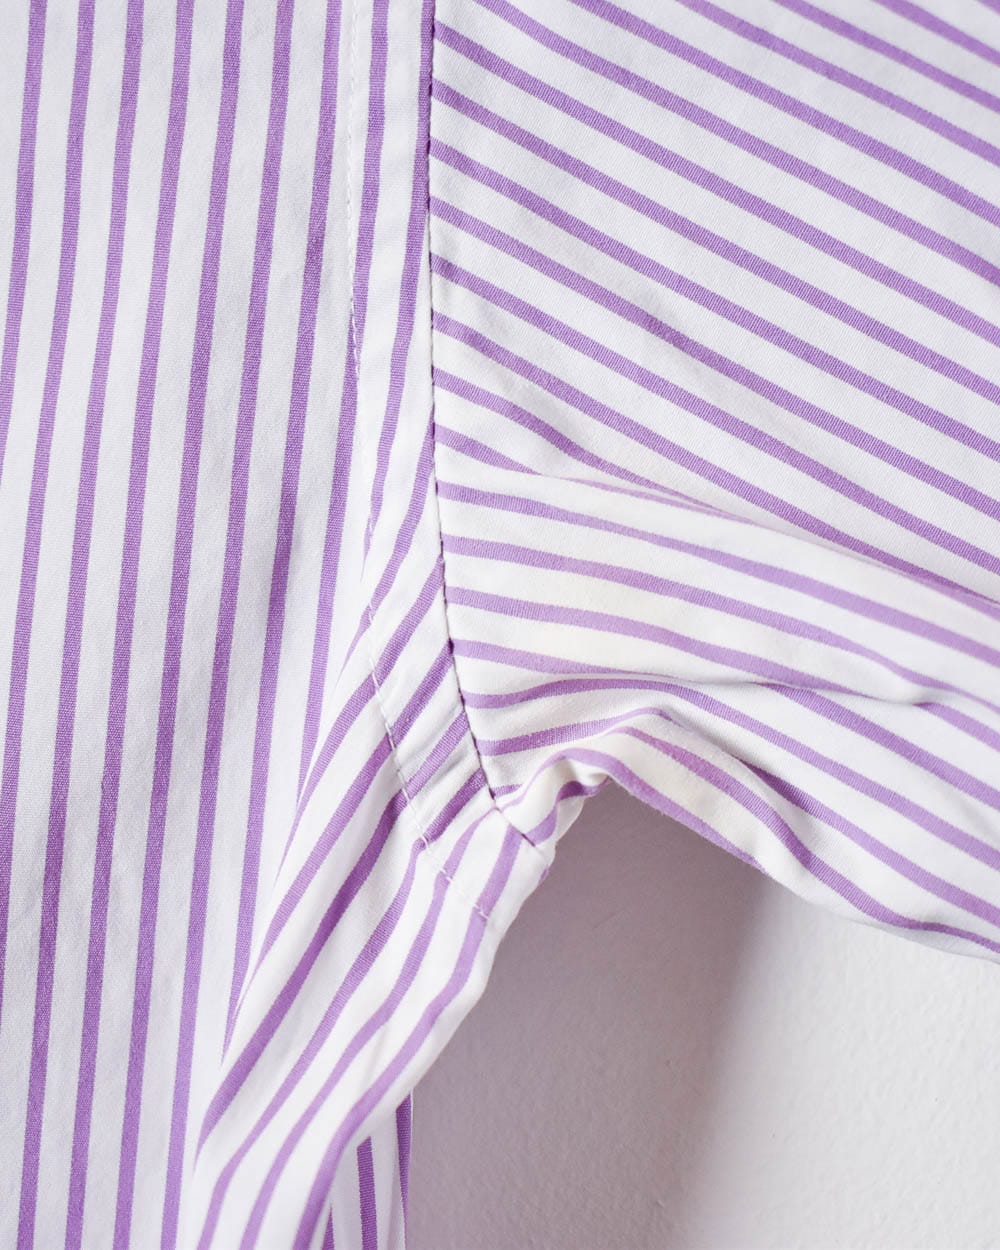 Pink Polo Ralph Lauren Striped Shirt - Medium Women's